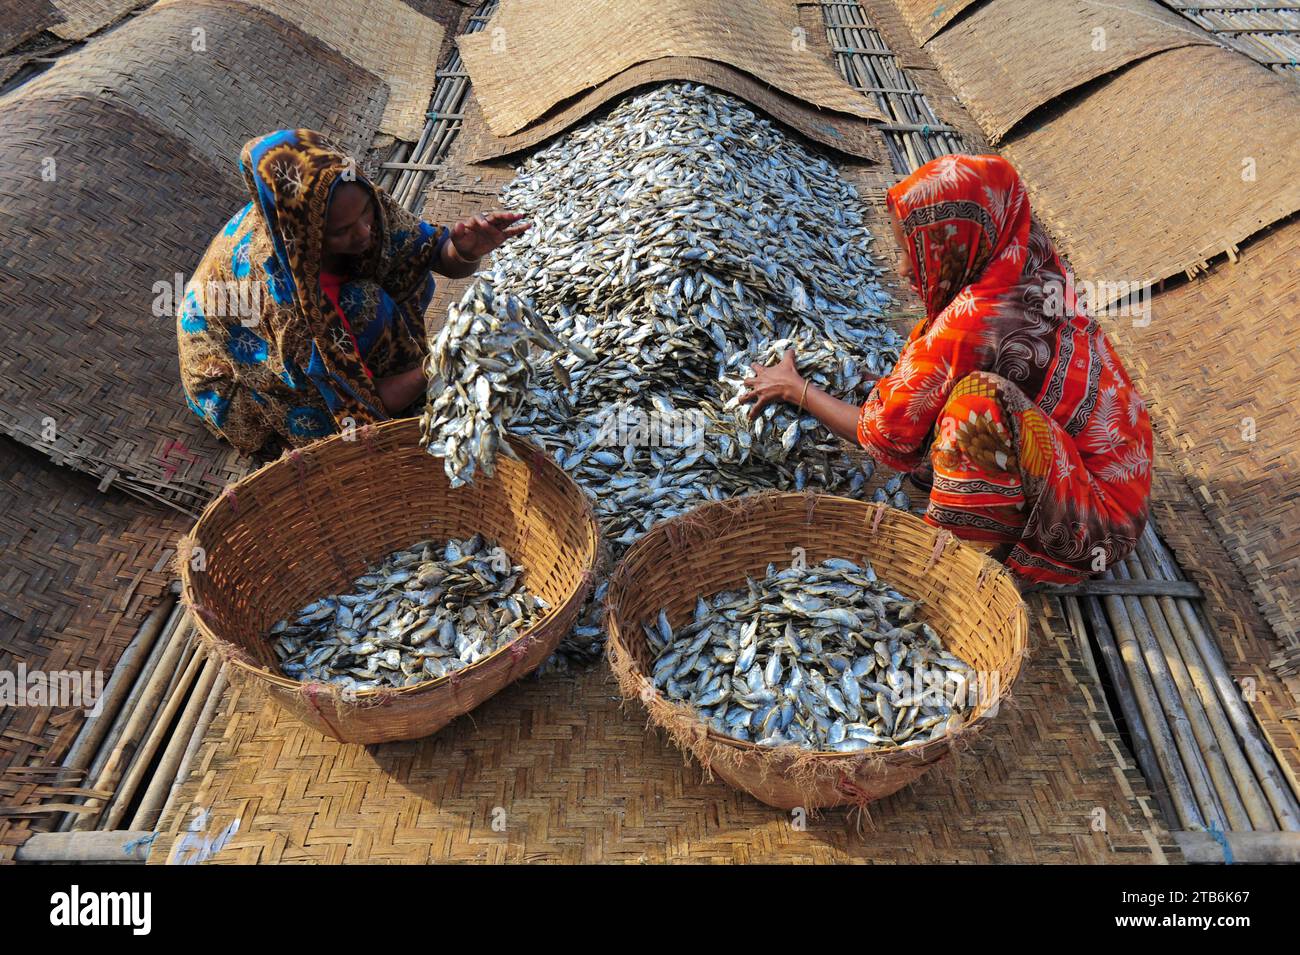 Die Arbeiter sind mit der Verarbeitung von getrocknetem Fisch in der Region Lama Kazi in Sylhet beschäftigt. Jedes Jahr, wenn die Wintersaison kommt, werden die kleinen Fischarten, die im lokalen Flusskanal Bilhaor gefangen werden, zu Großhandelspreisen gekauft, getrocknet und an Großhändler in verschiedenen Teilen des Landes verkauft, mit einem geschätzten Wert von Hunderten von Kronen Taka. Rund 70 Geschäftsleute bauen an bestimmten Orten Lofts, um Waren zu trocknen. 1500 bis 2000 Personen sind an der Trocknung von Waren beteiligt. Sylhet, Bangladesch. Stockfoto